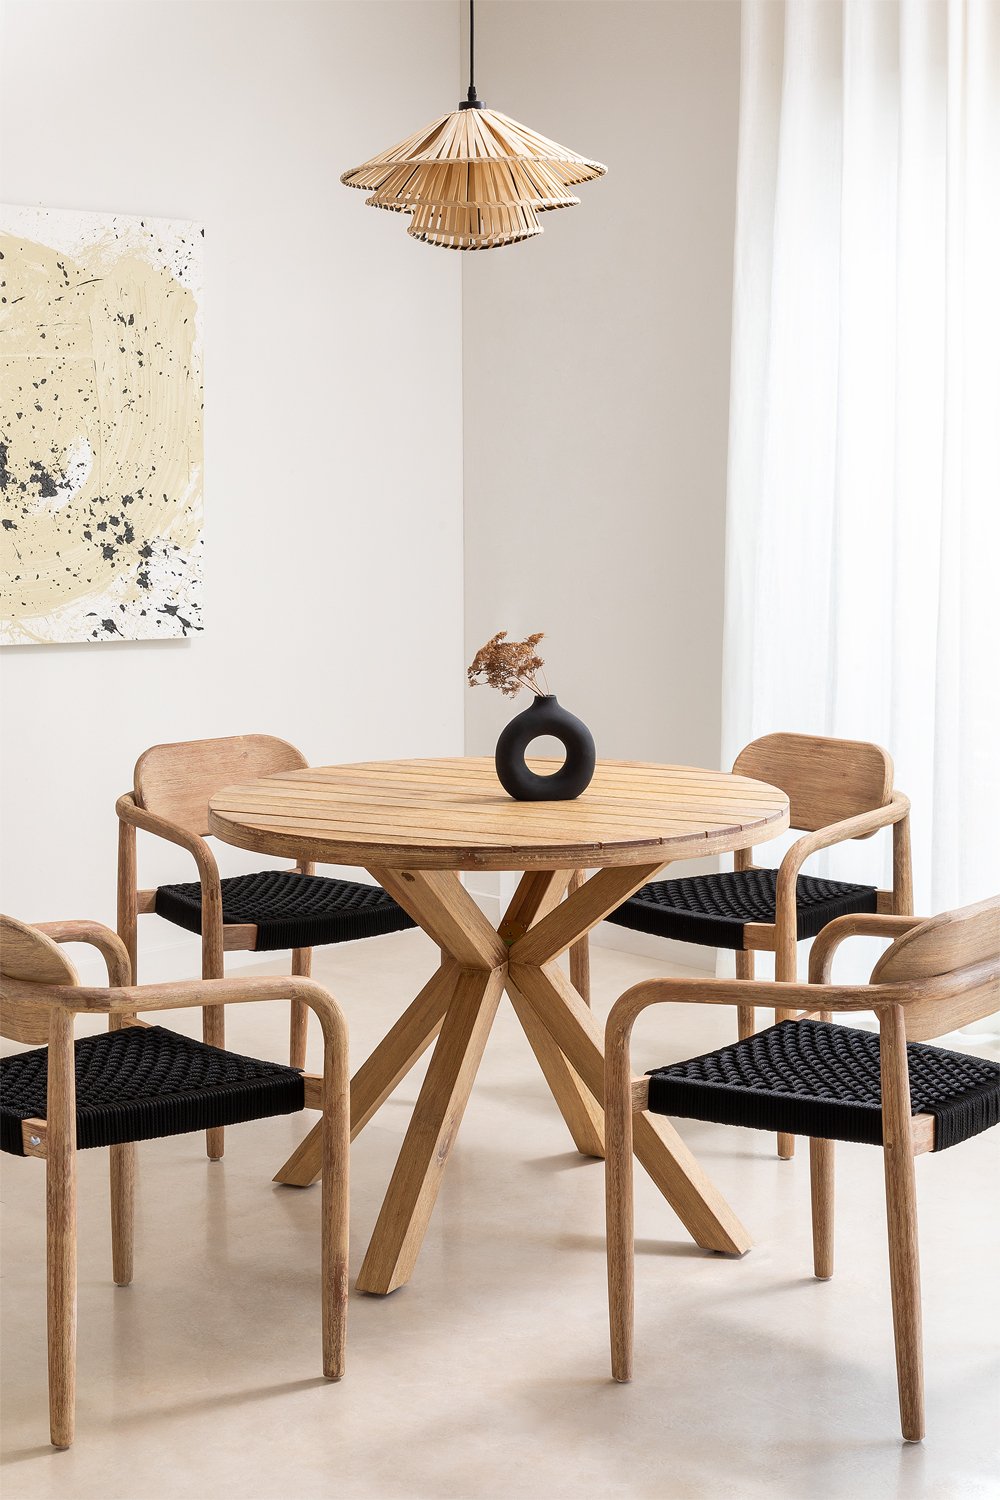 Set mit rundem Tisch (Ø 100 cm) und 4 Esszimmerstühle mit Armlehnen aus Holz Naele, Galeriebild 1